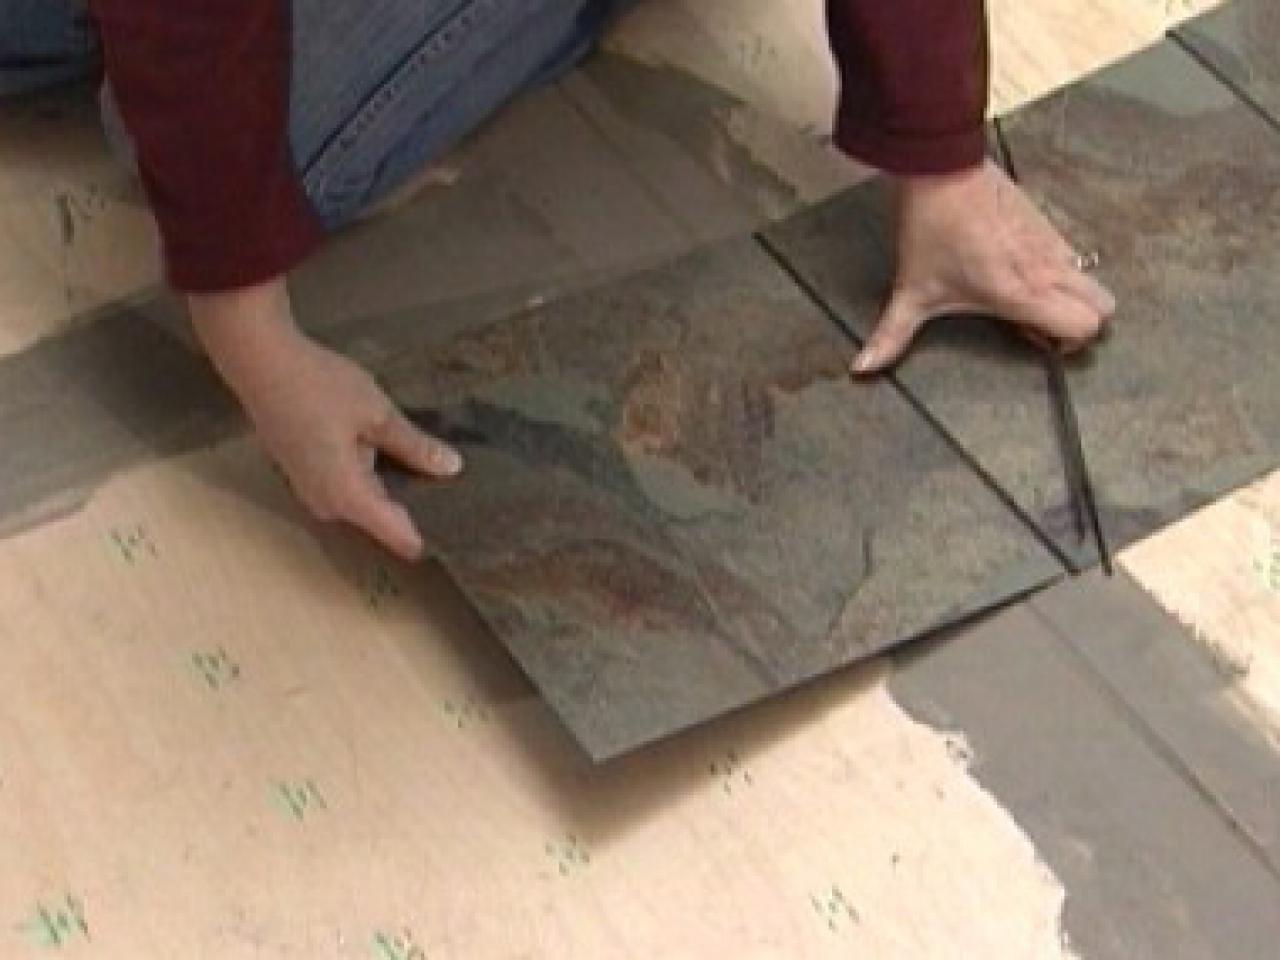 How To Install Vinyl Flooring That, Vinyl Plank Flooring That Looks Like Slate